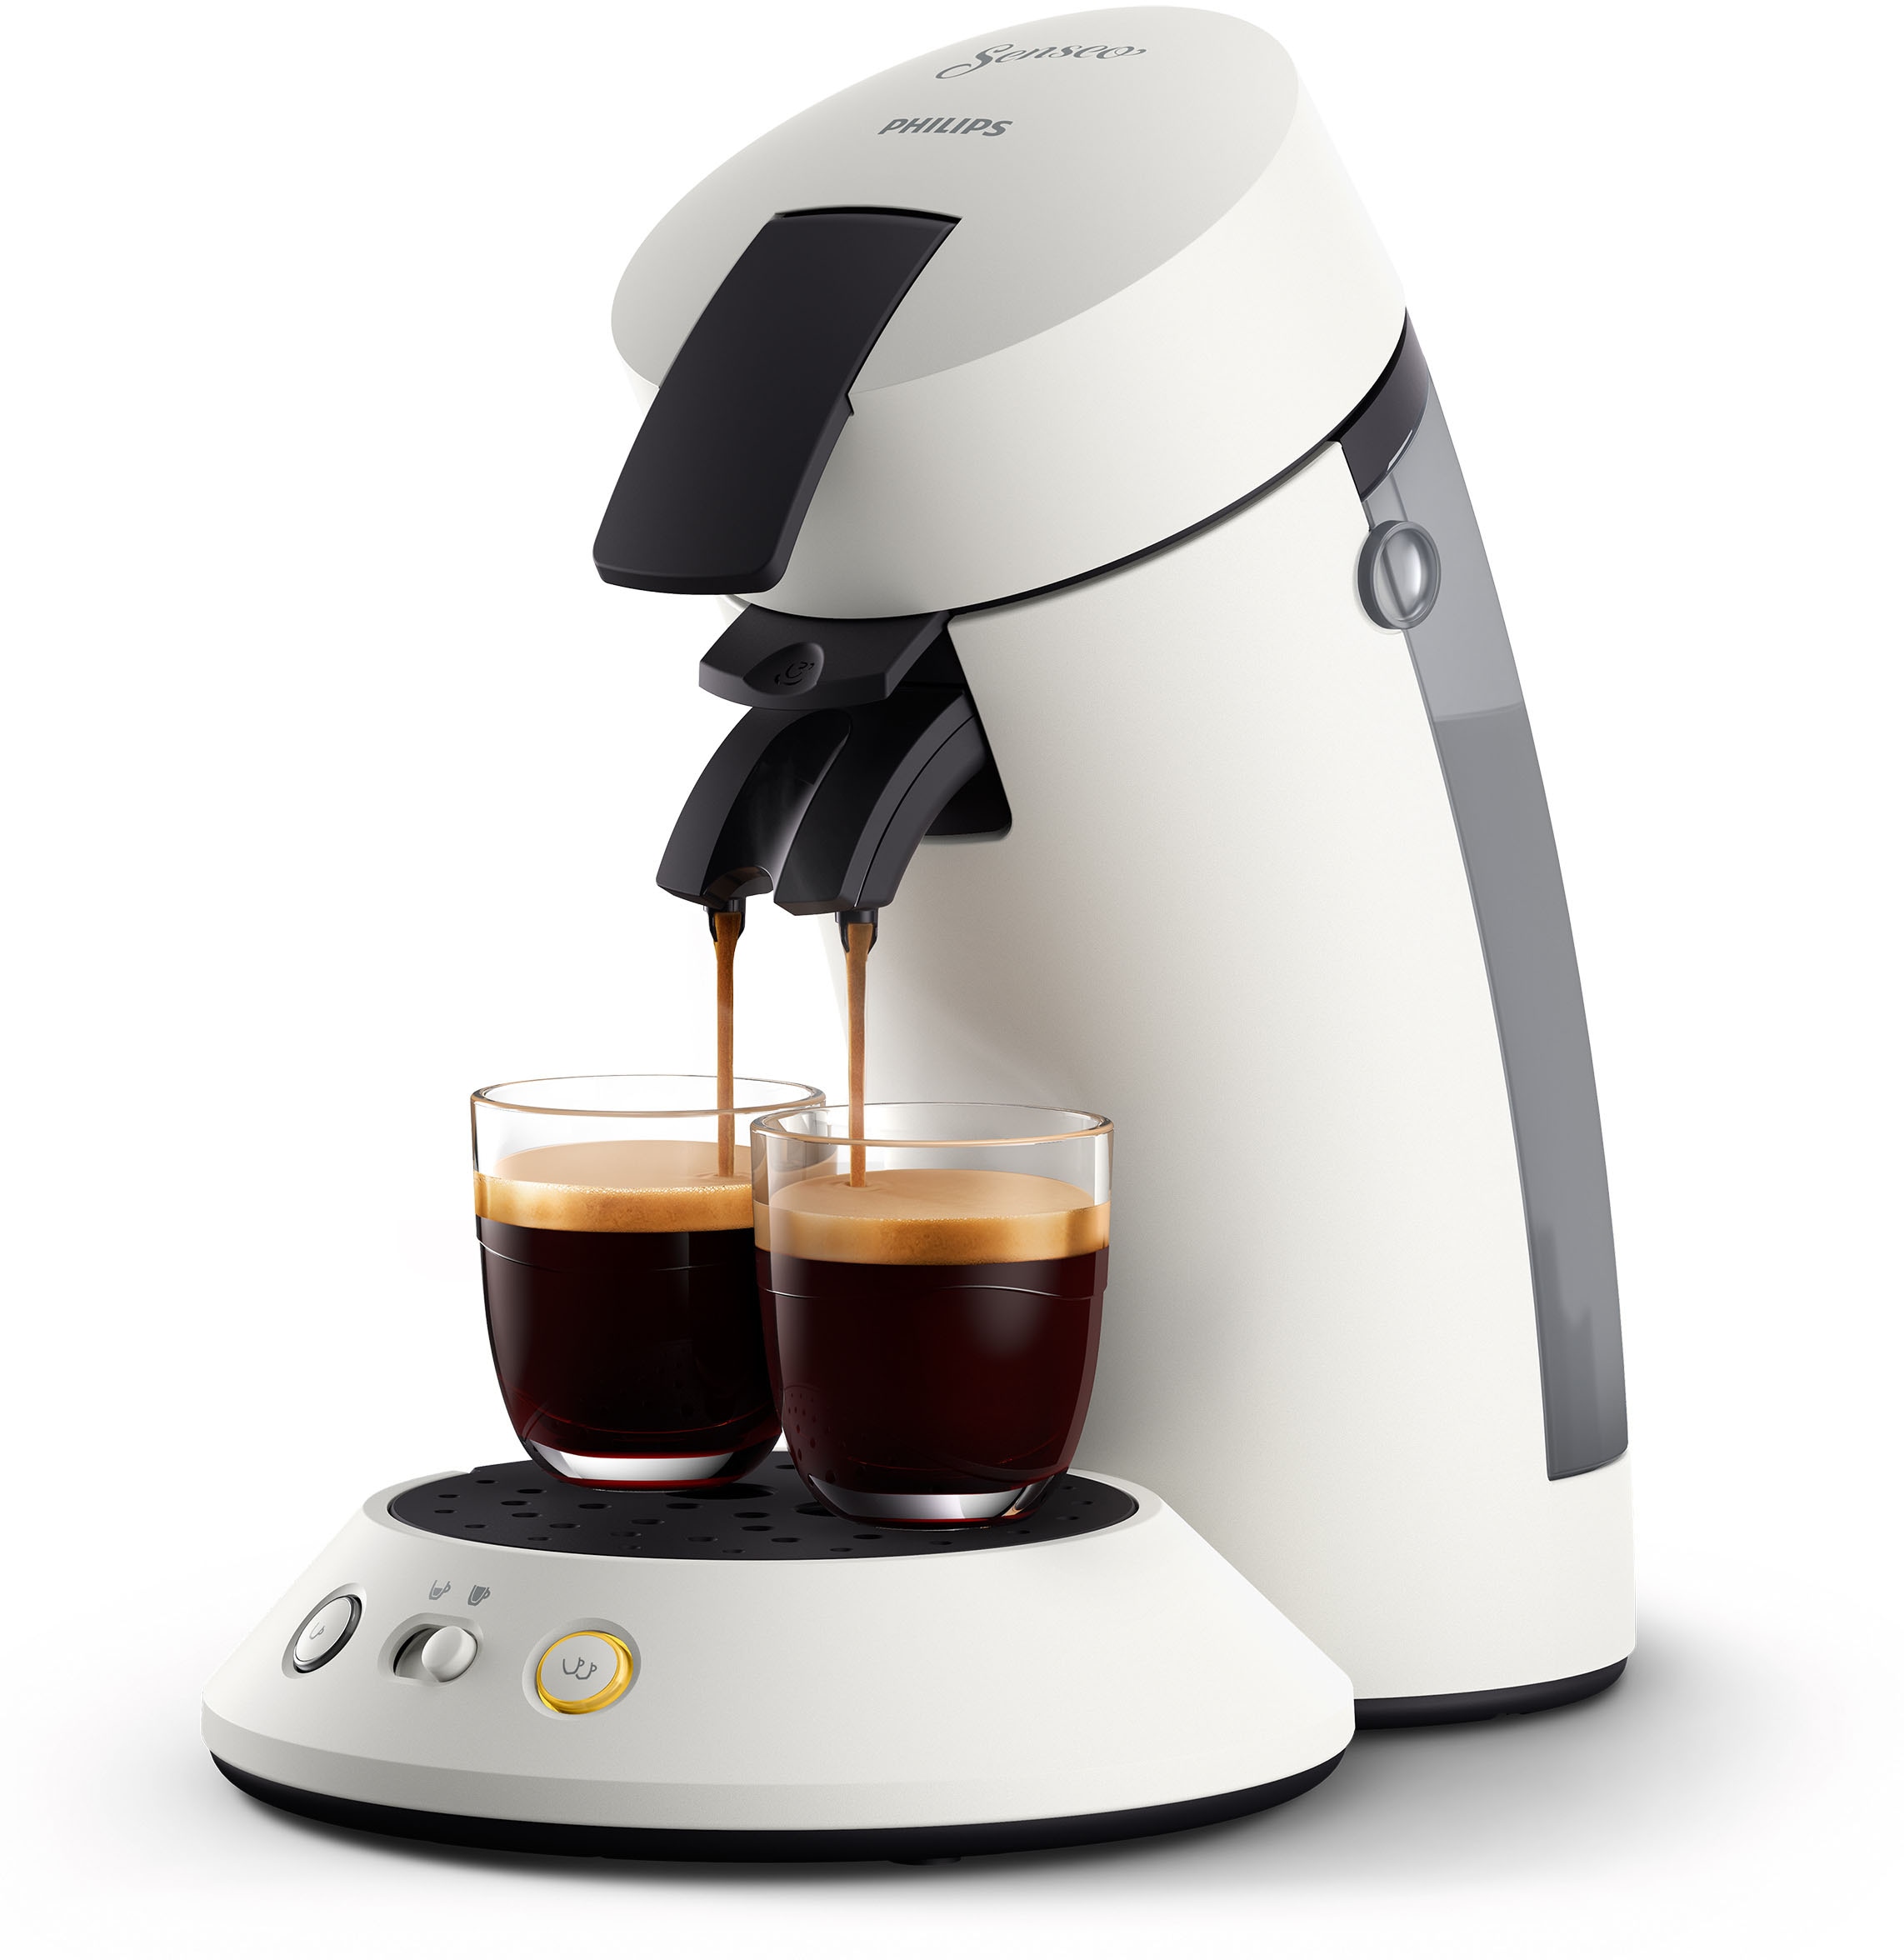 Gratis- Wert Rechnung 5,- Zugaben inkl. Kaffeepadmaschine Senseo Philips »Original im von UVP CSA210/10«, per | Plus BAUR